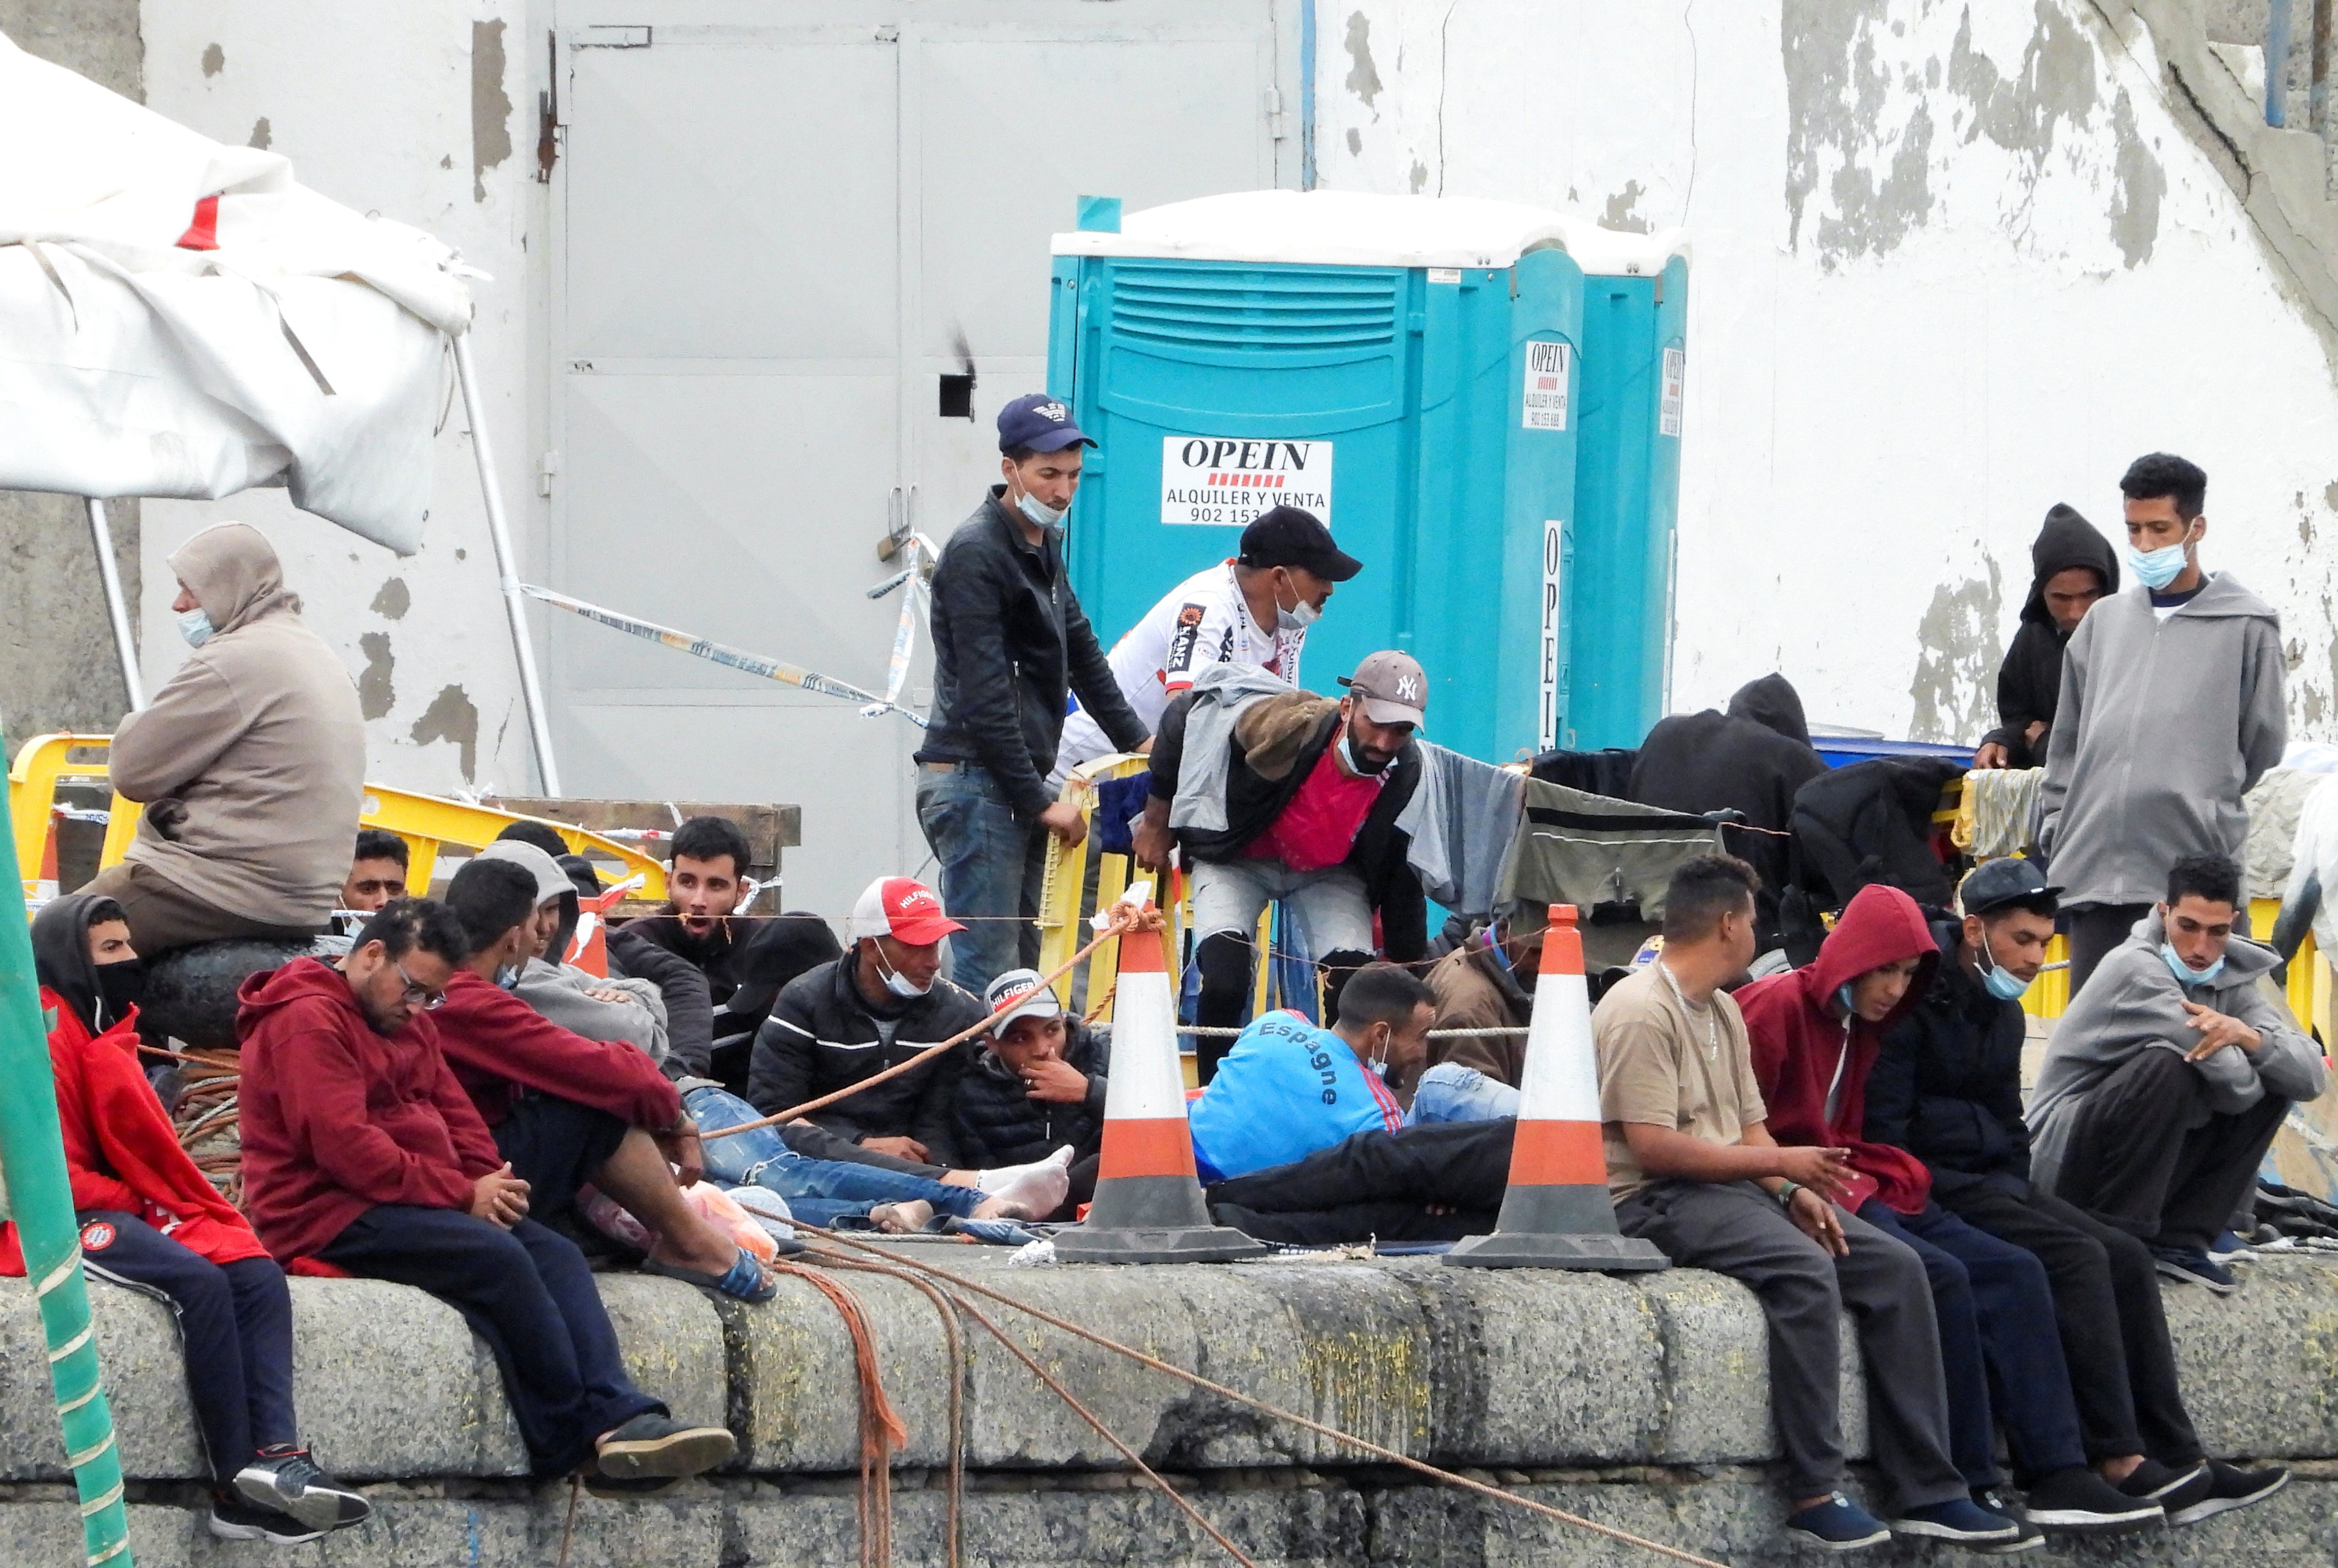 La UE donarà urgentment 43 milions a Espanya pels migrants arribats a Canàries